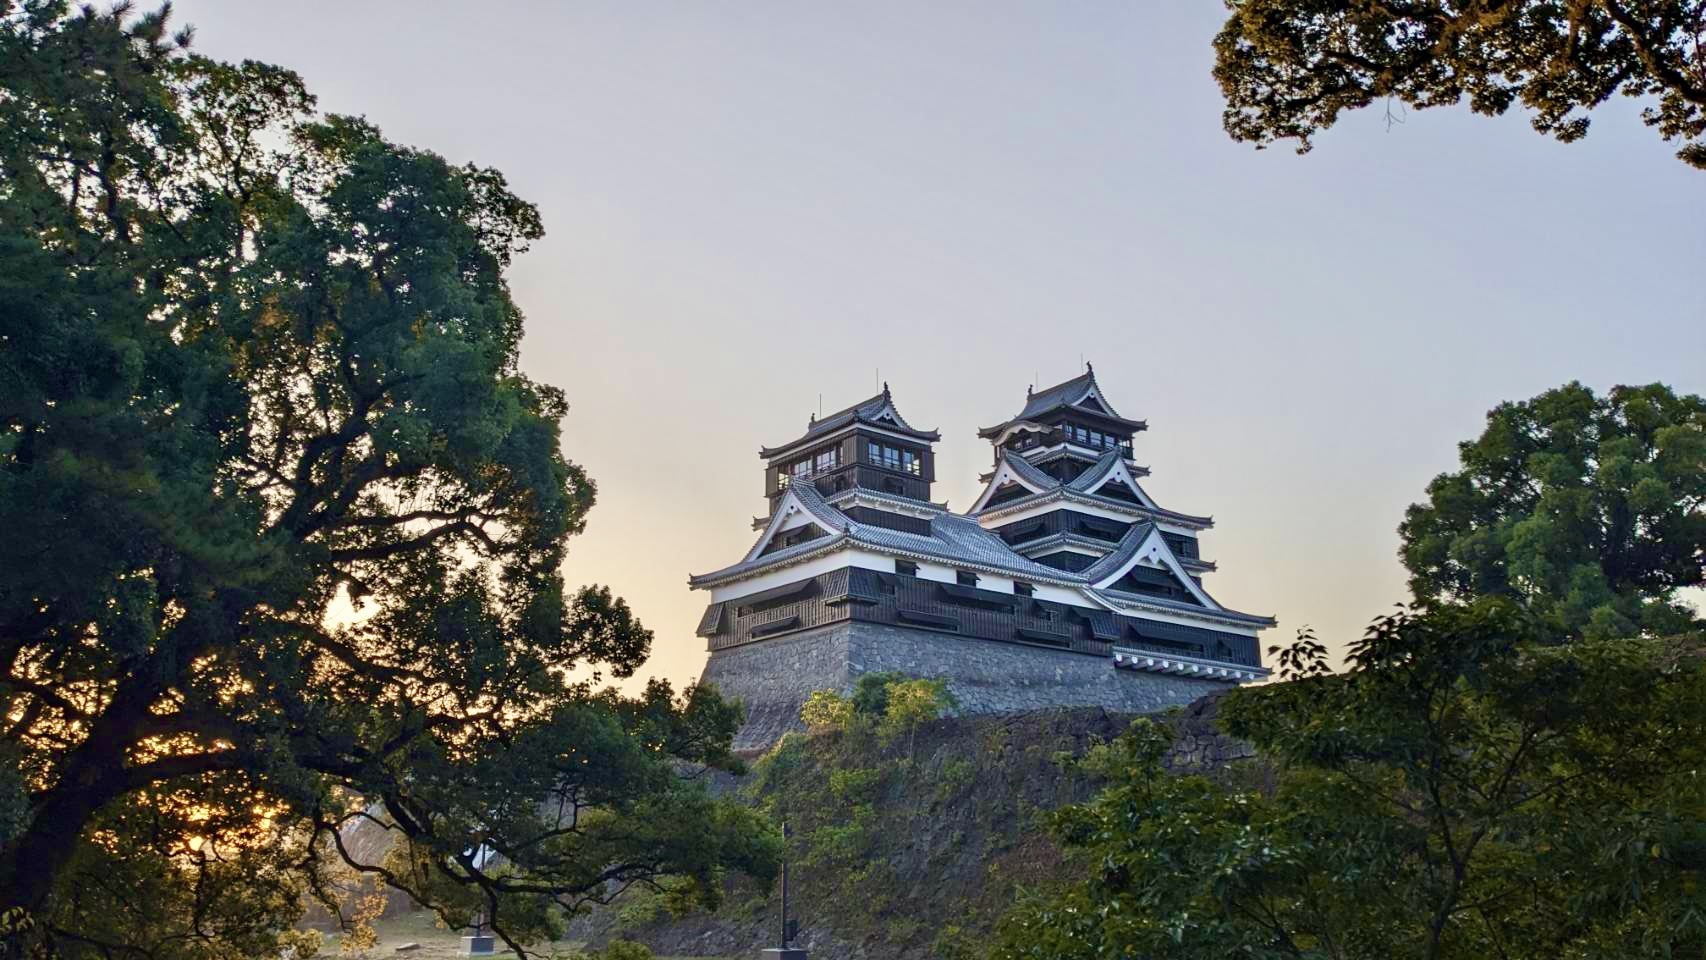 復旧が進み、堂々とした姿を取り戻しつつある大小天守「熊本城」